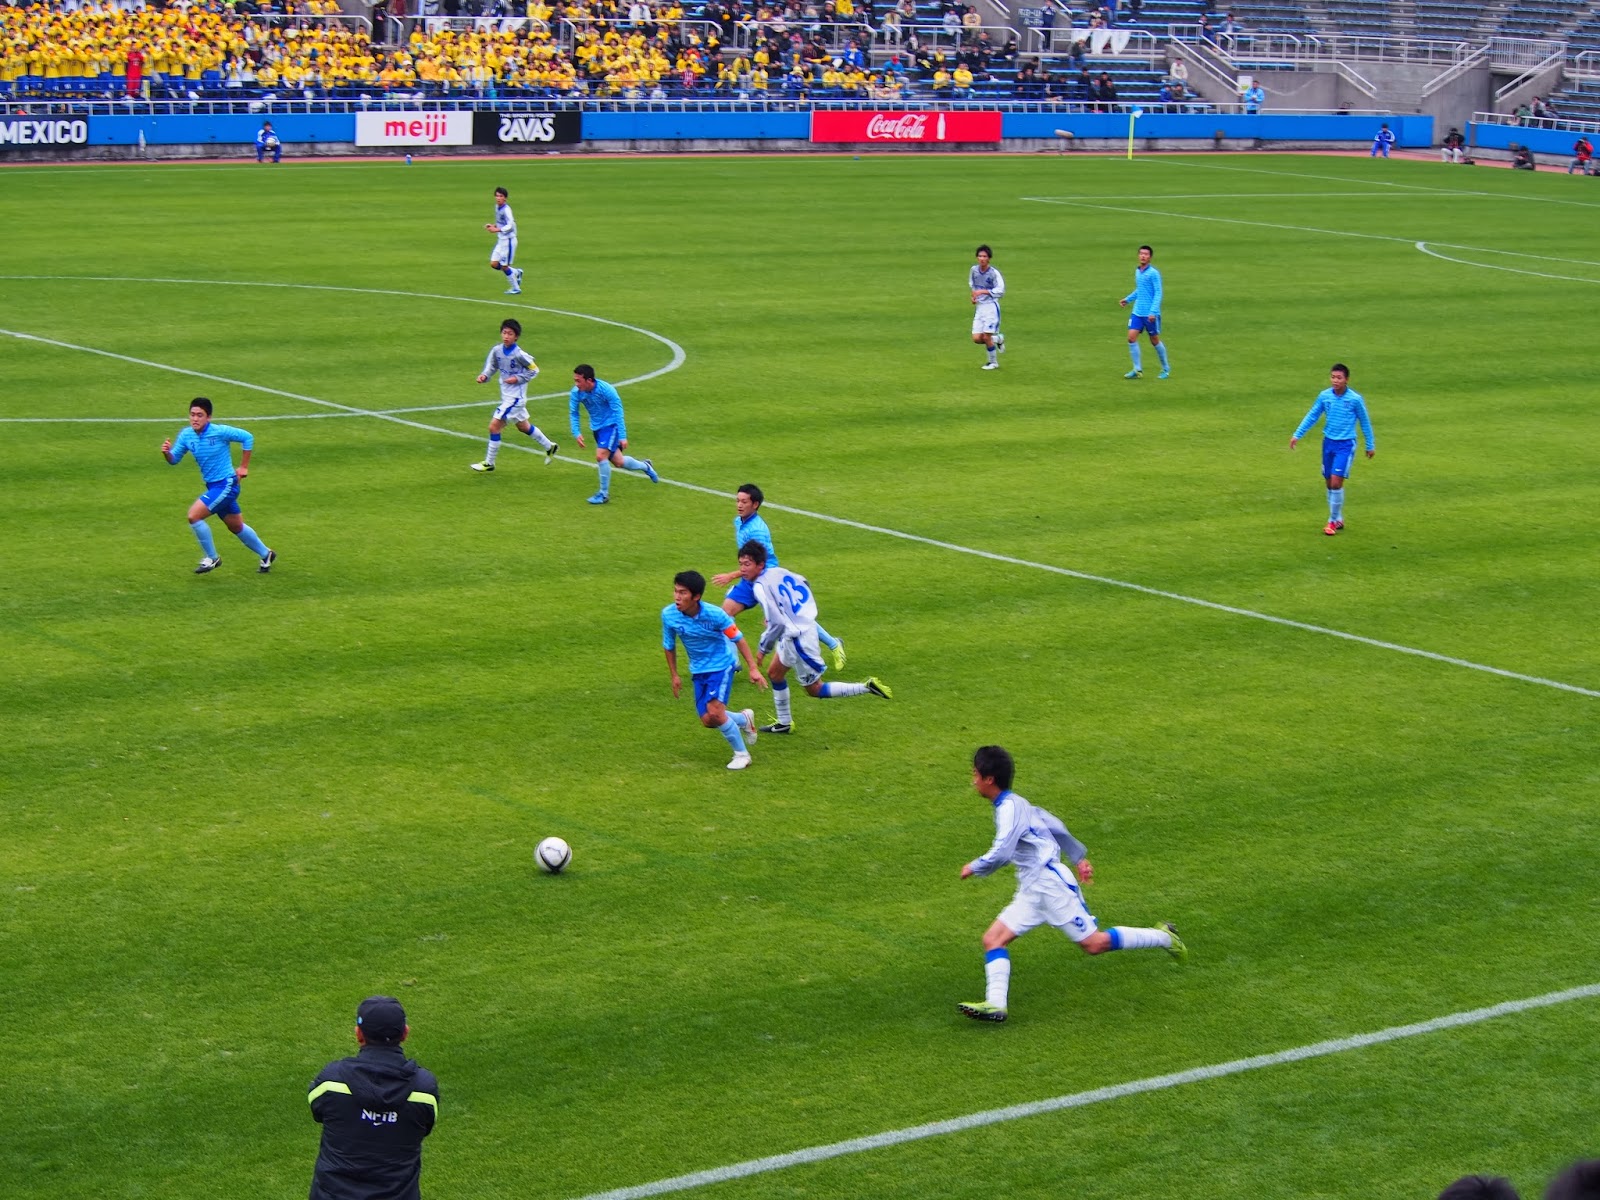 白いページ 高校サッカー選手権 神奈川県予選決勝で 座間のメッシ を見た